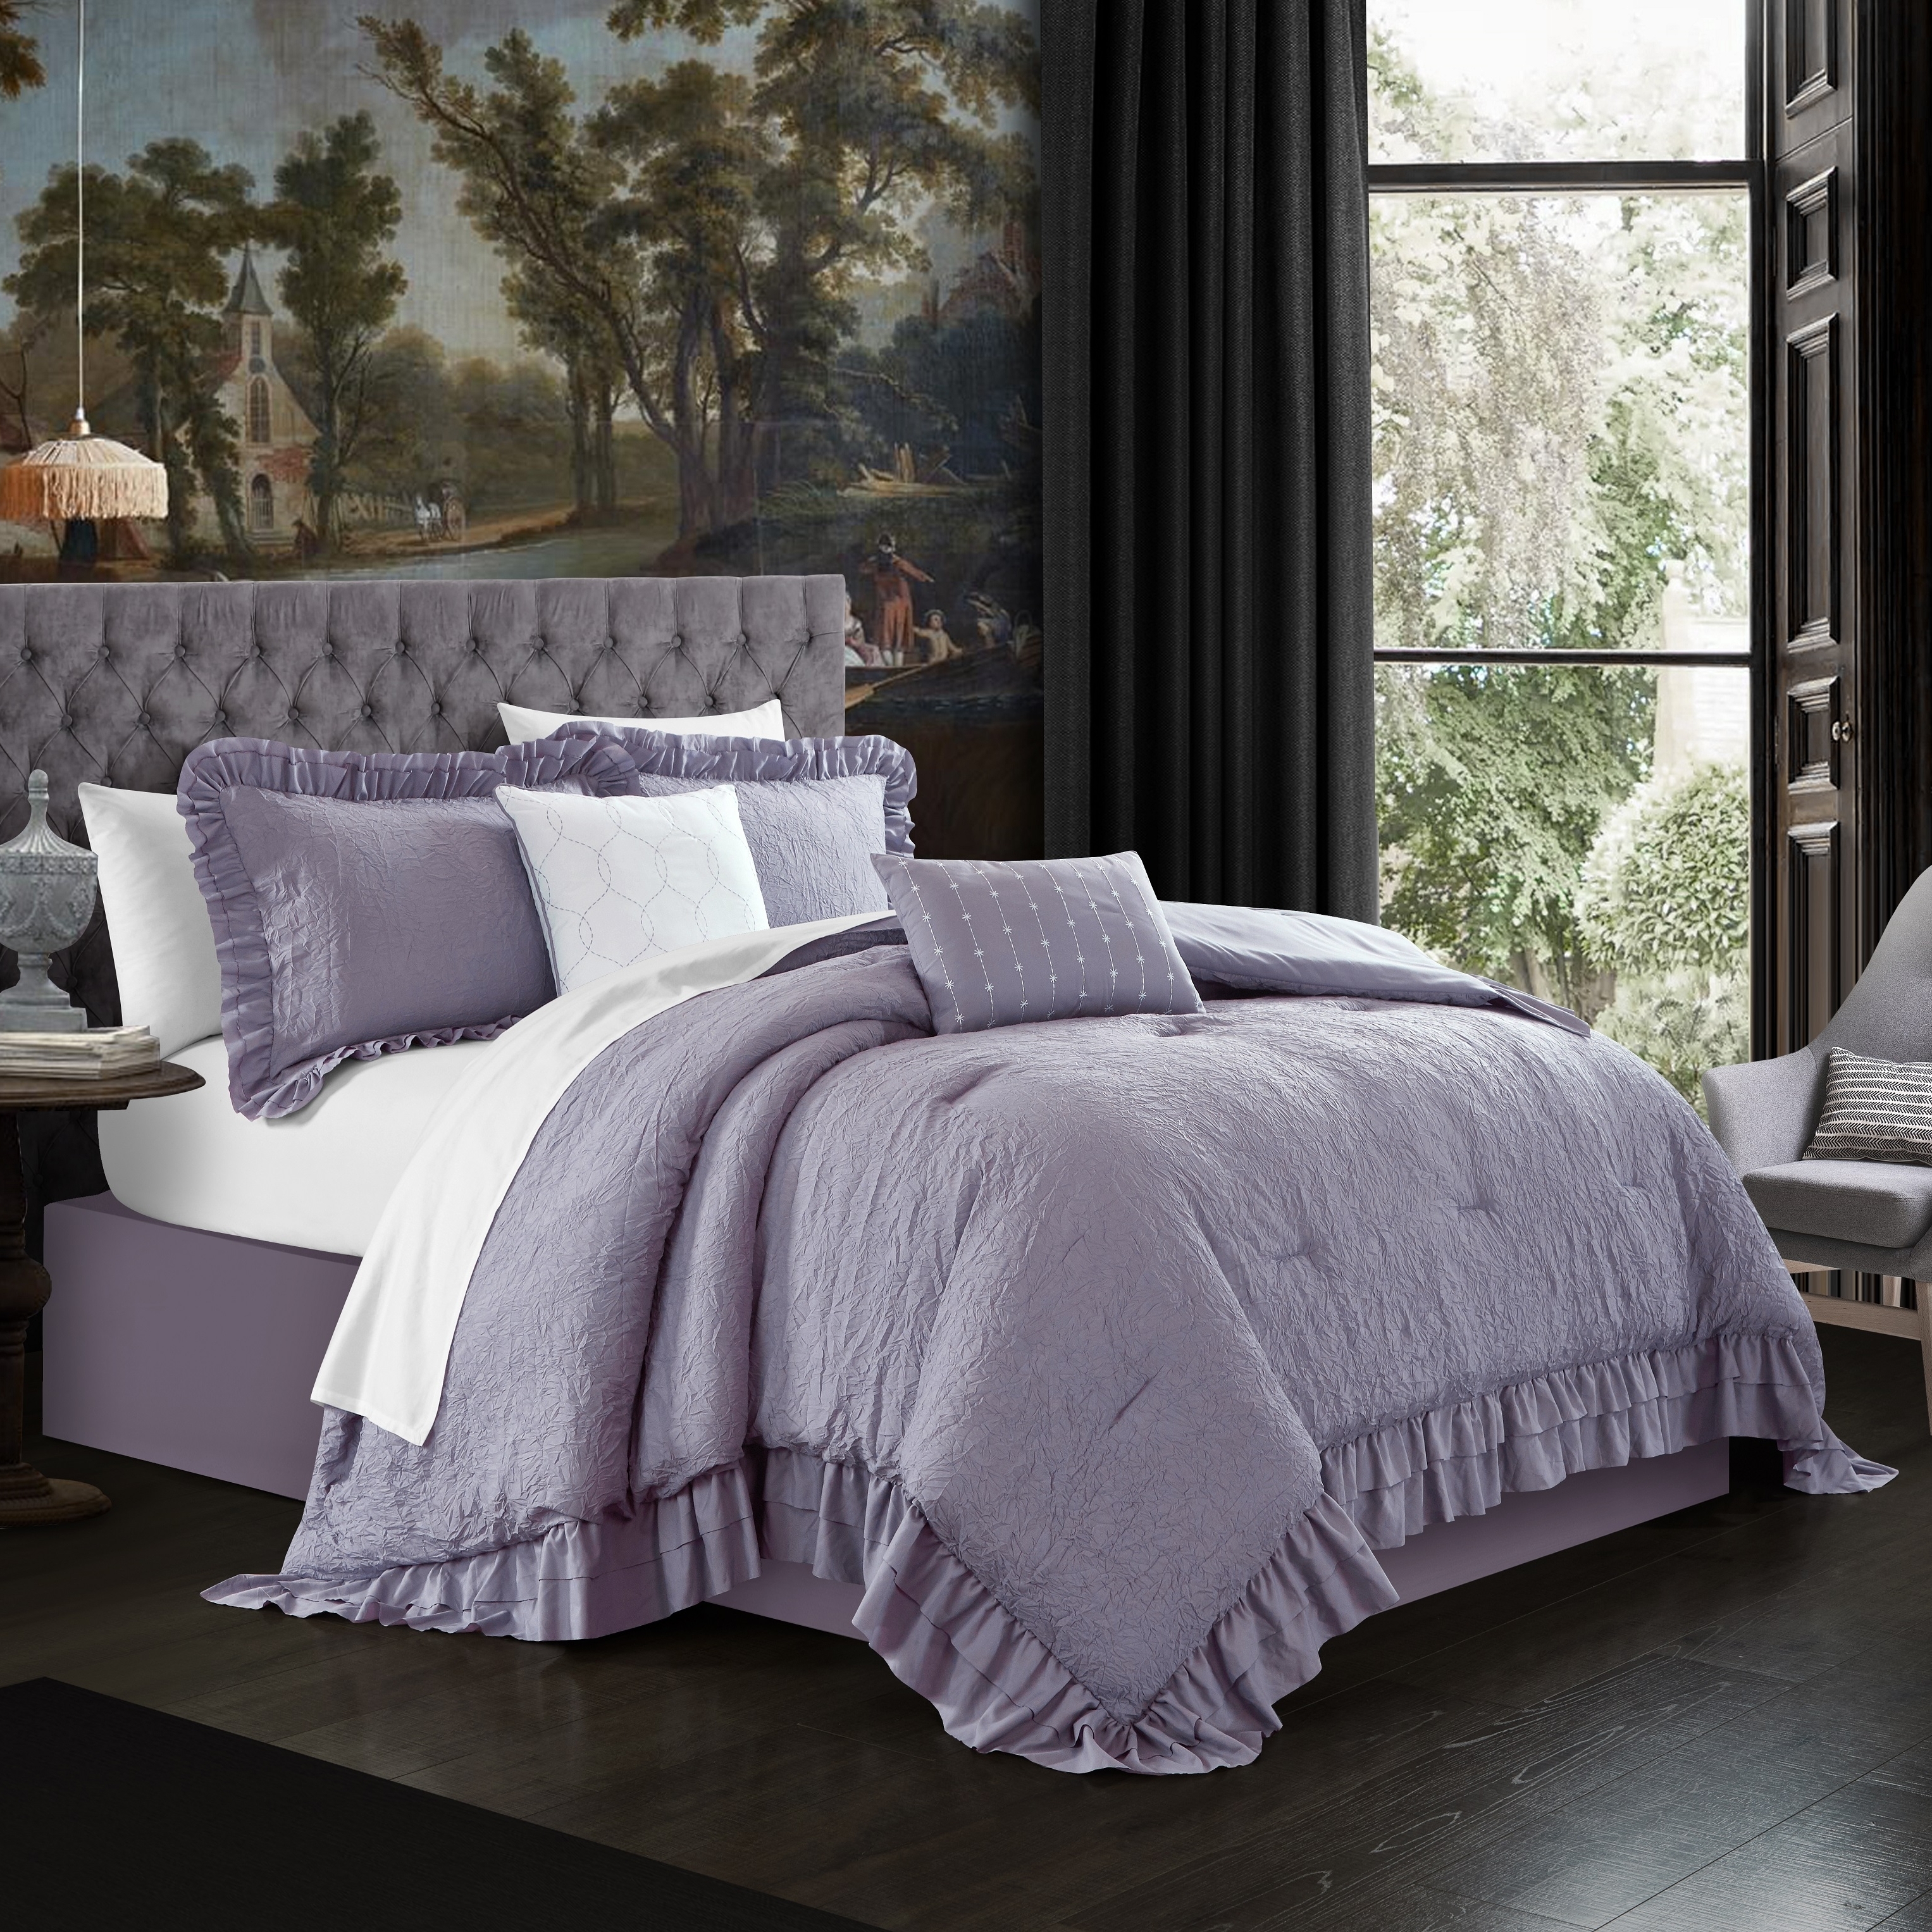 5 Piece Kensley Comforter Set Washed Crinkle Ruffled Flange Border Design Bedding - Lavender, Queen